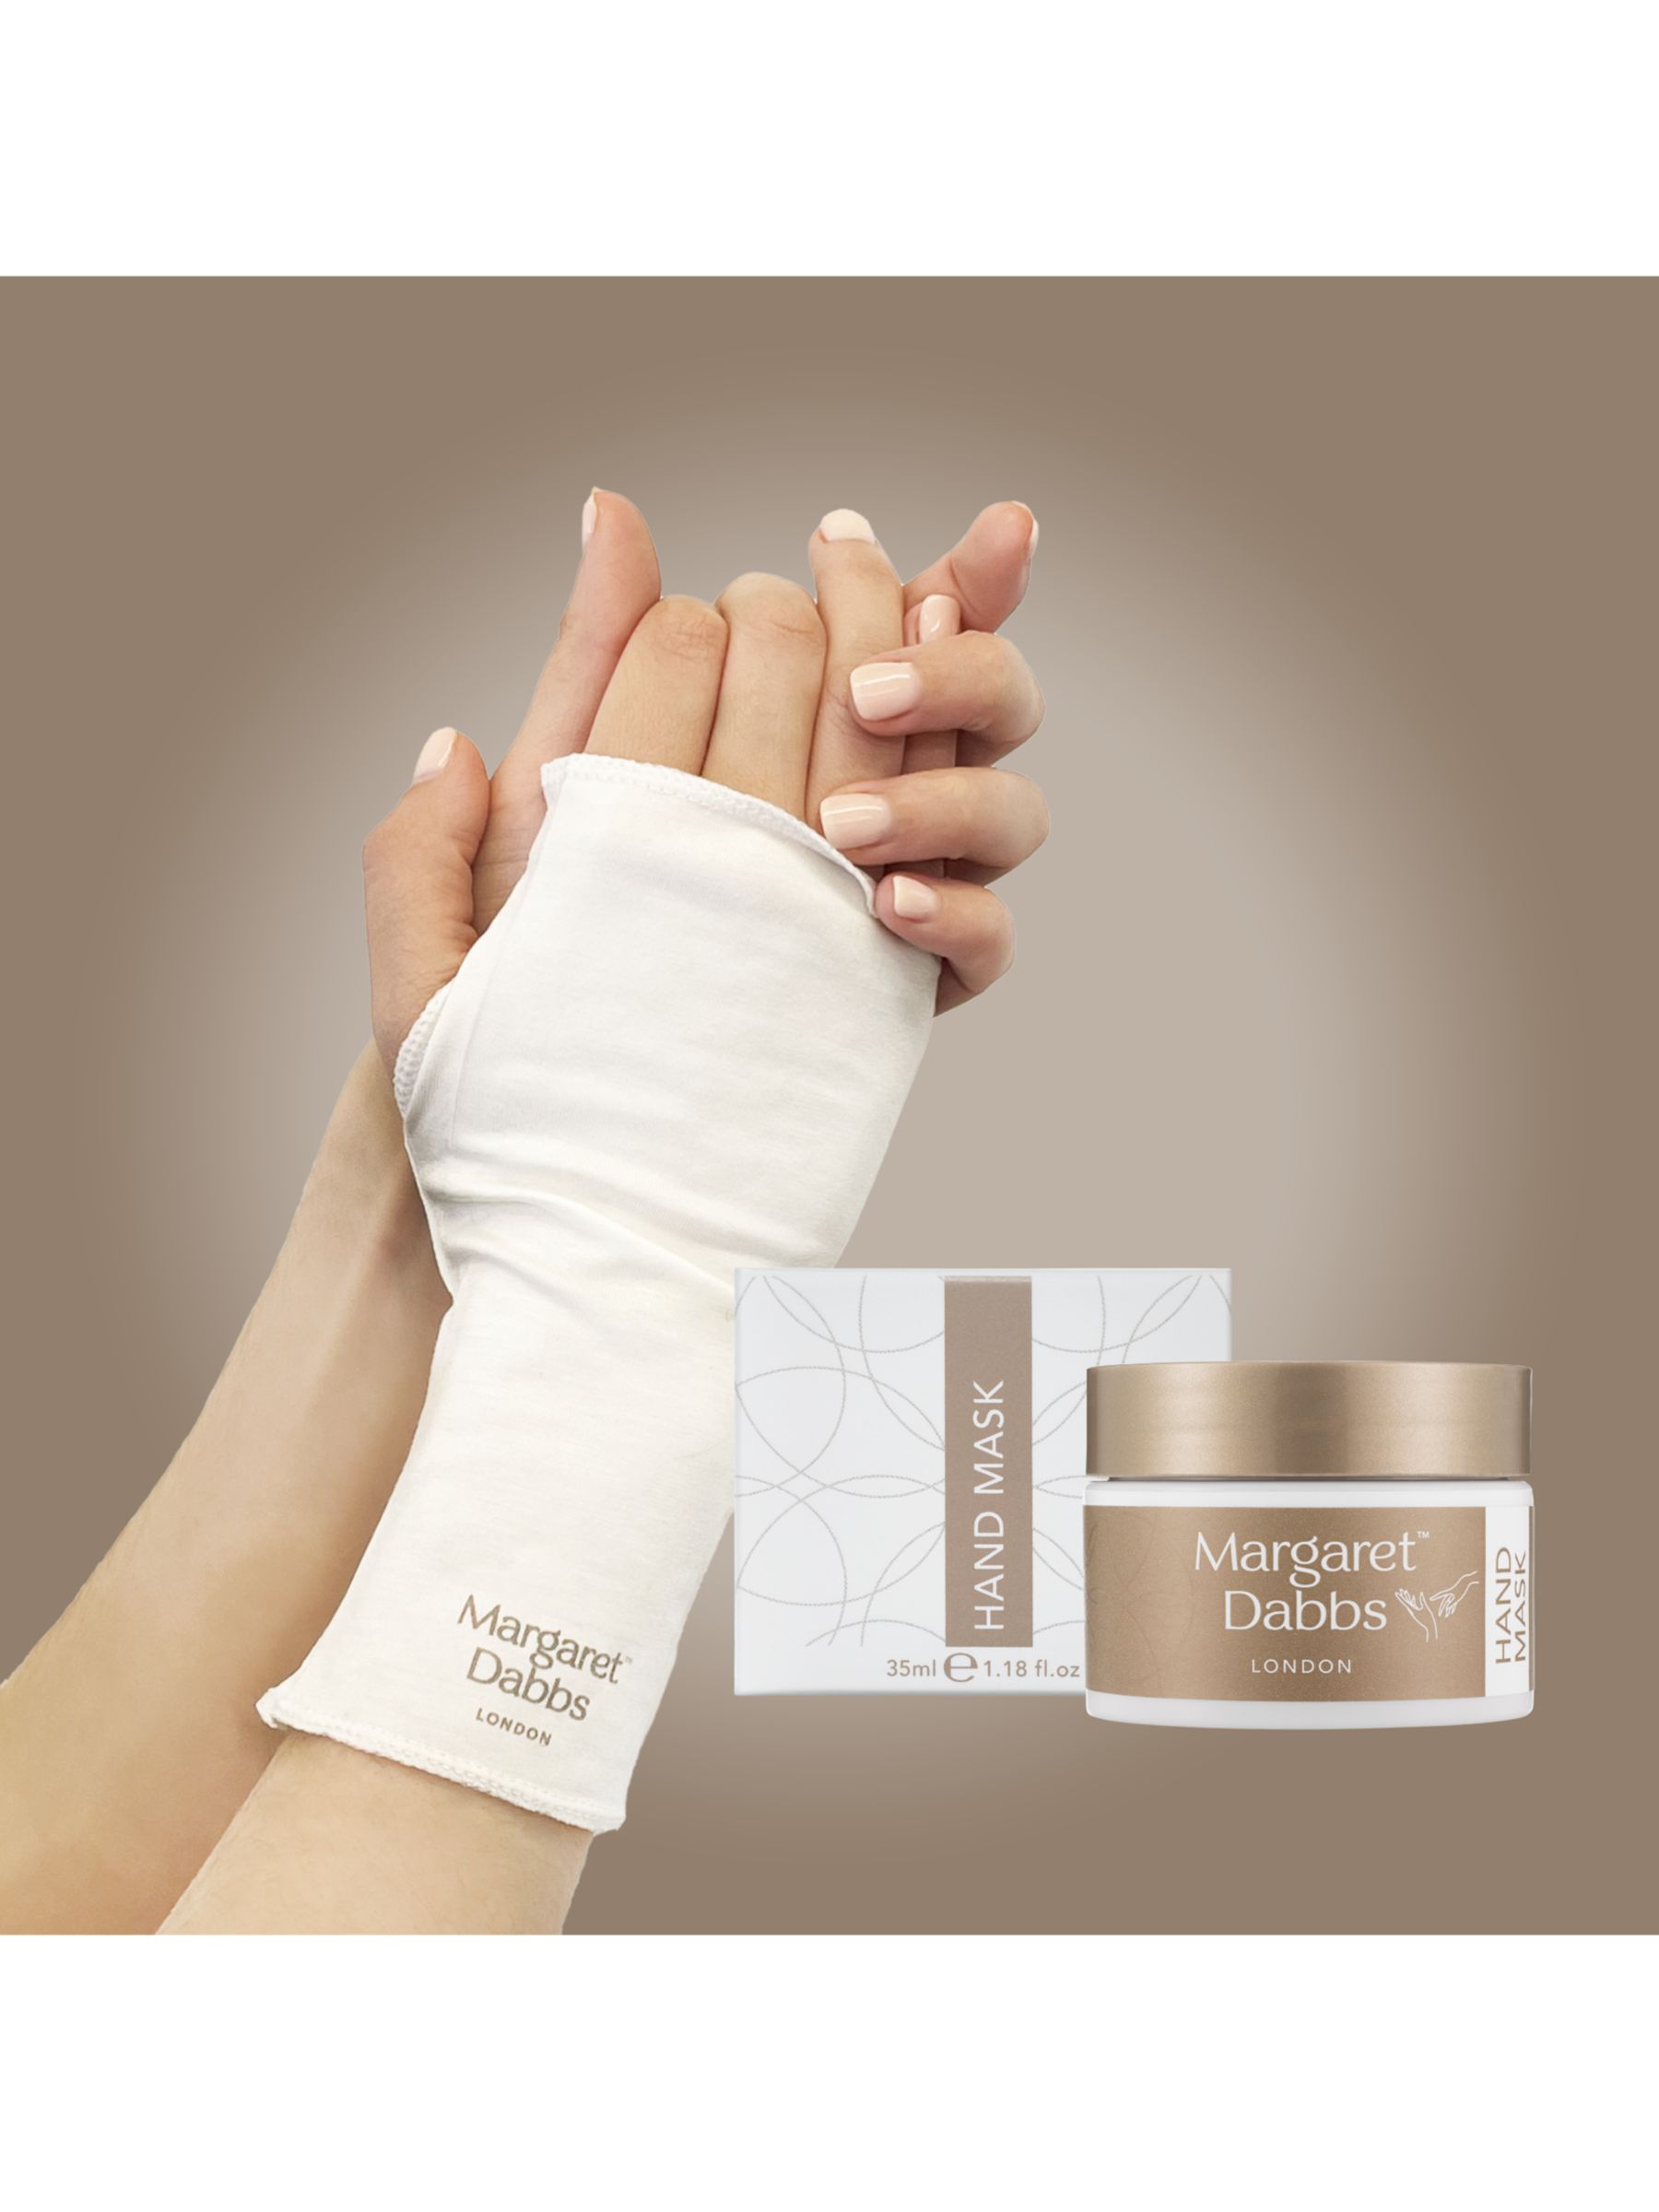 Margaret Dabbs London Branded Treatment Gloves 2